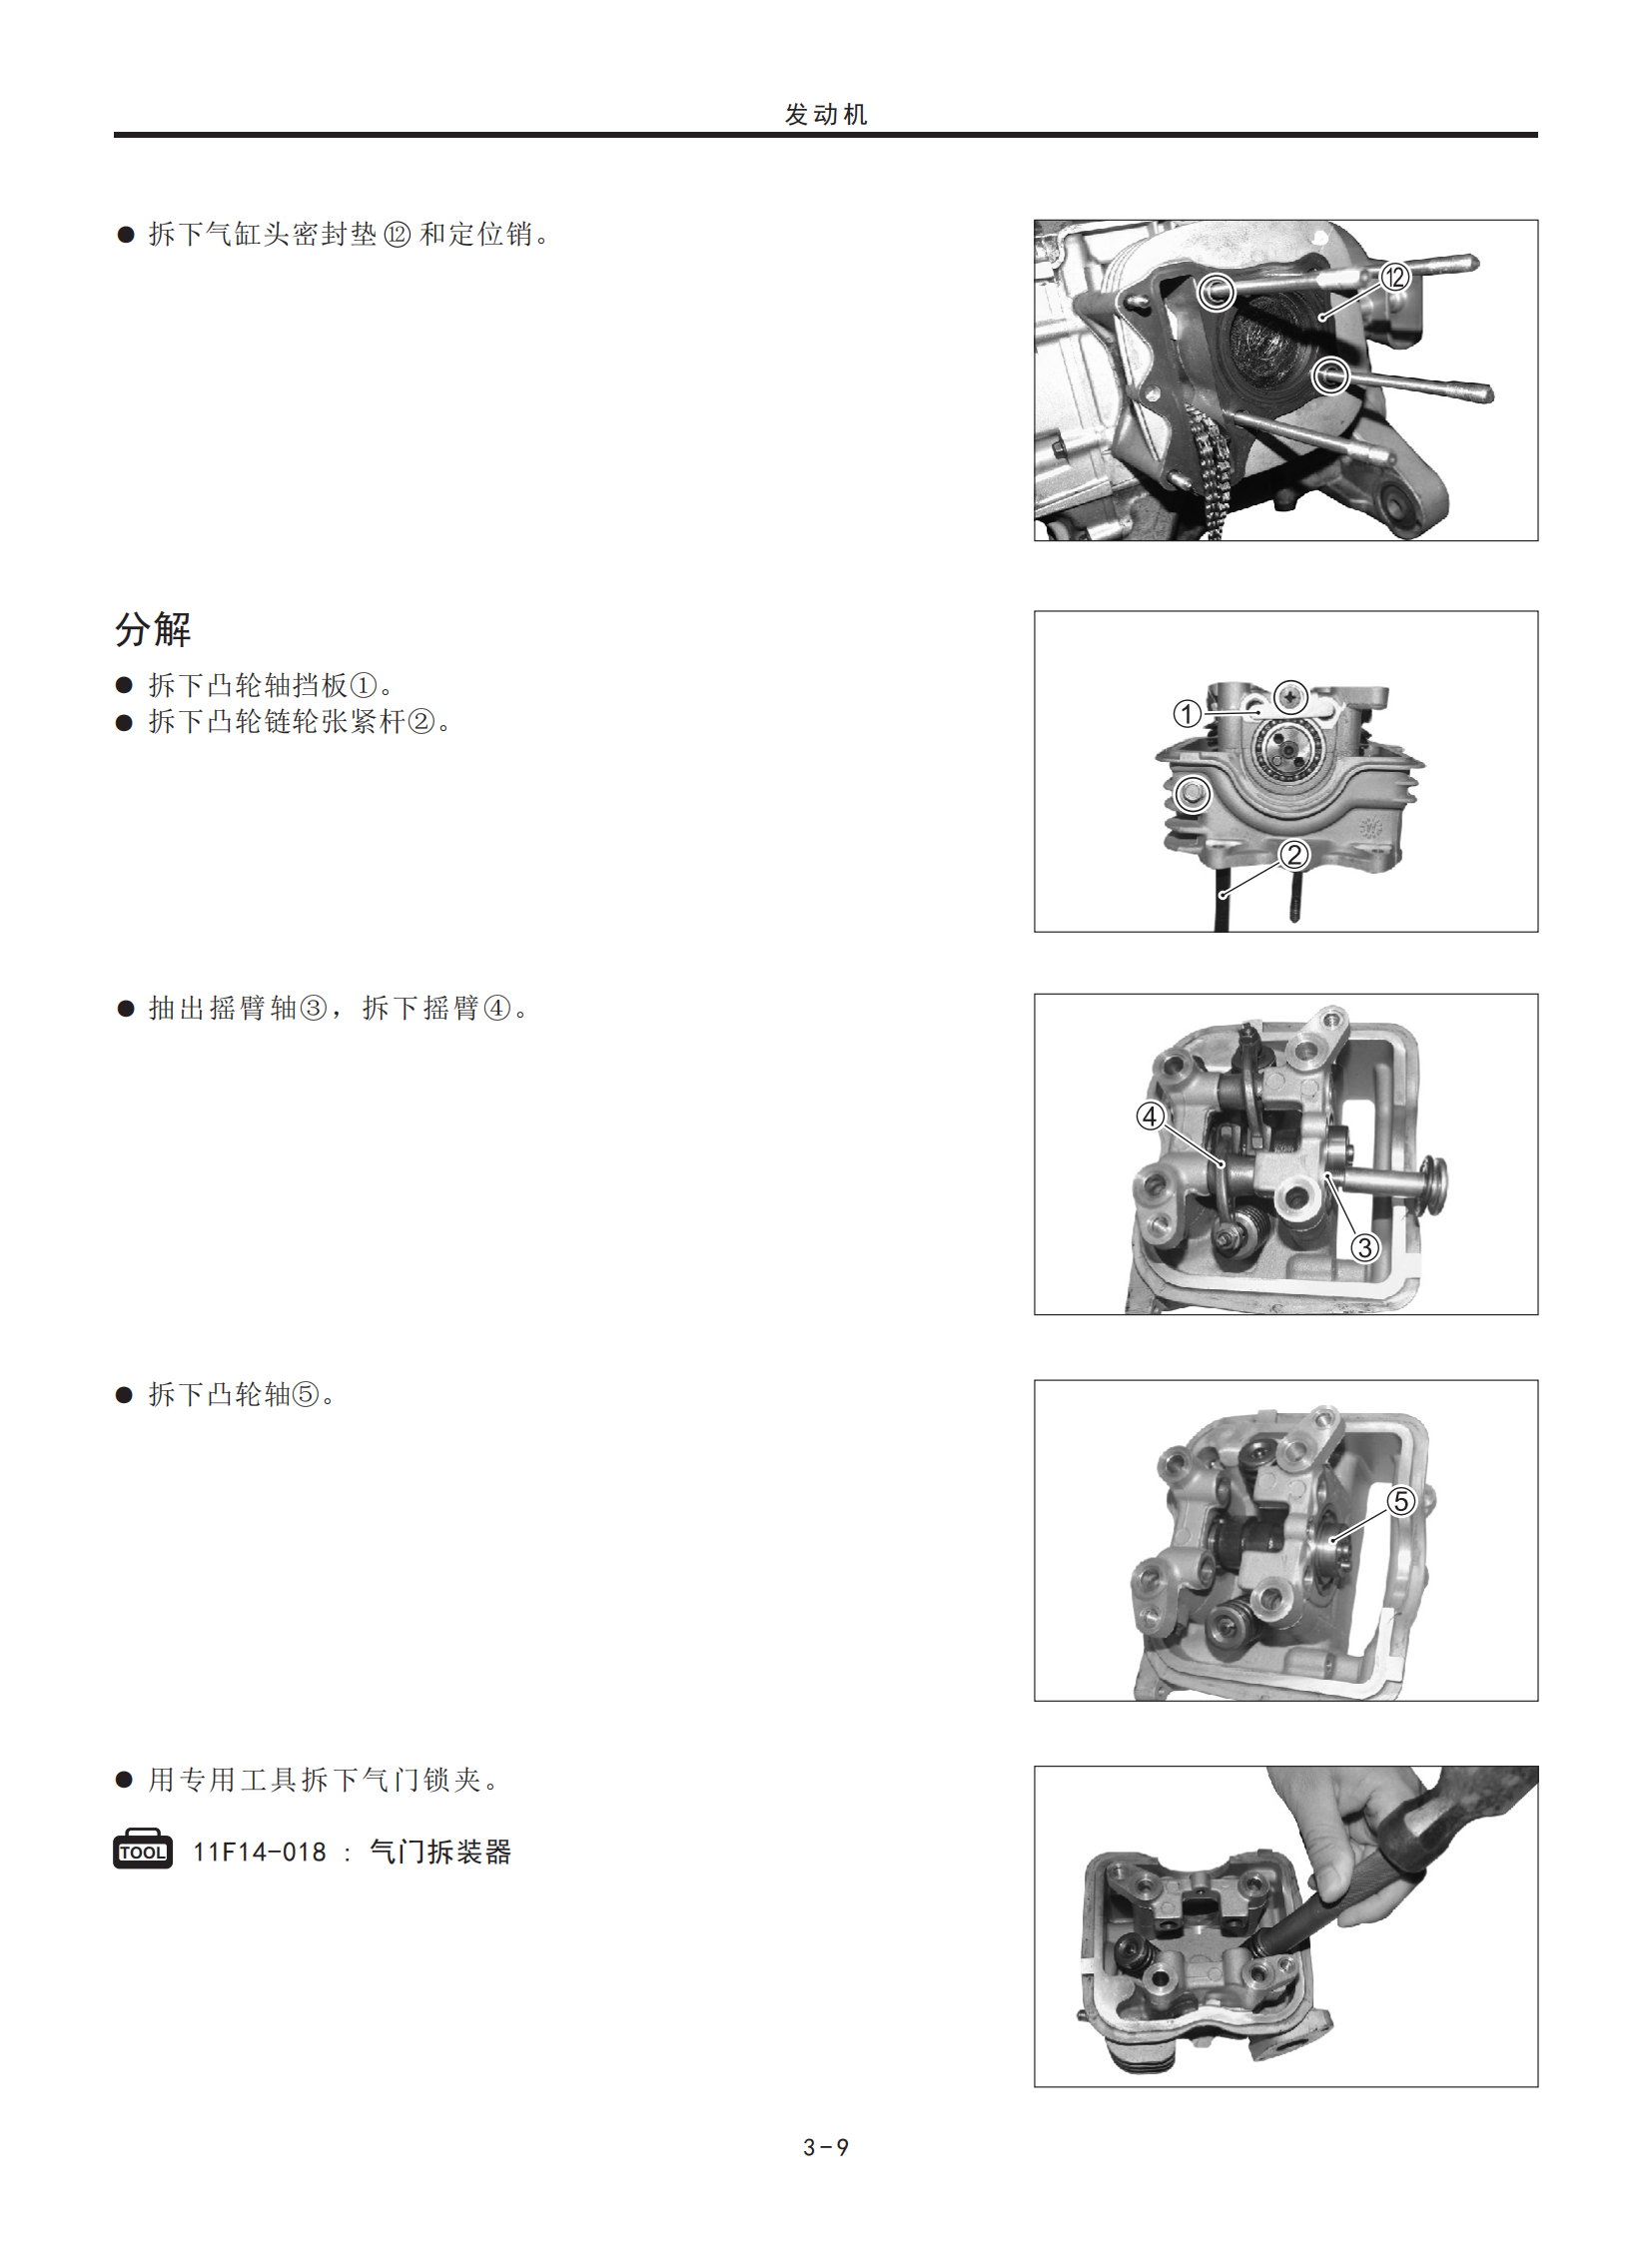 原版中文2016年豪爵灵迪维修手册HJ125T-18D维修手册插图3